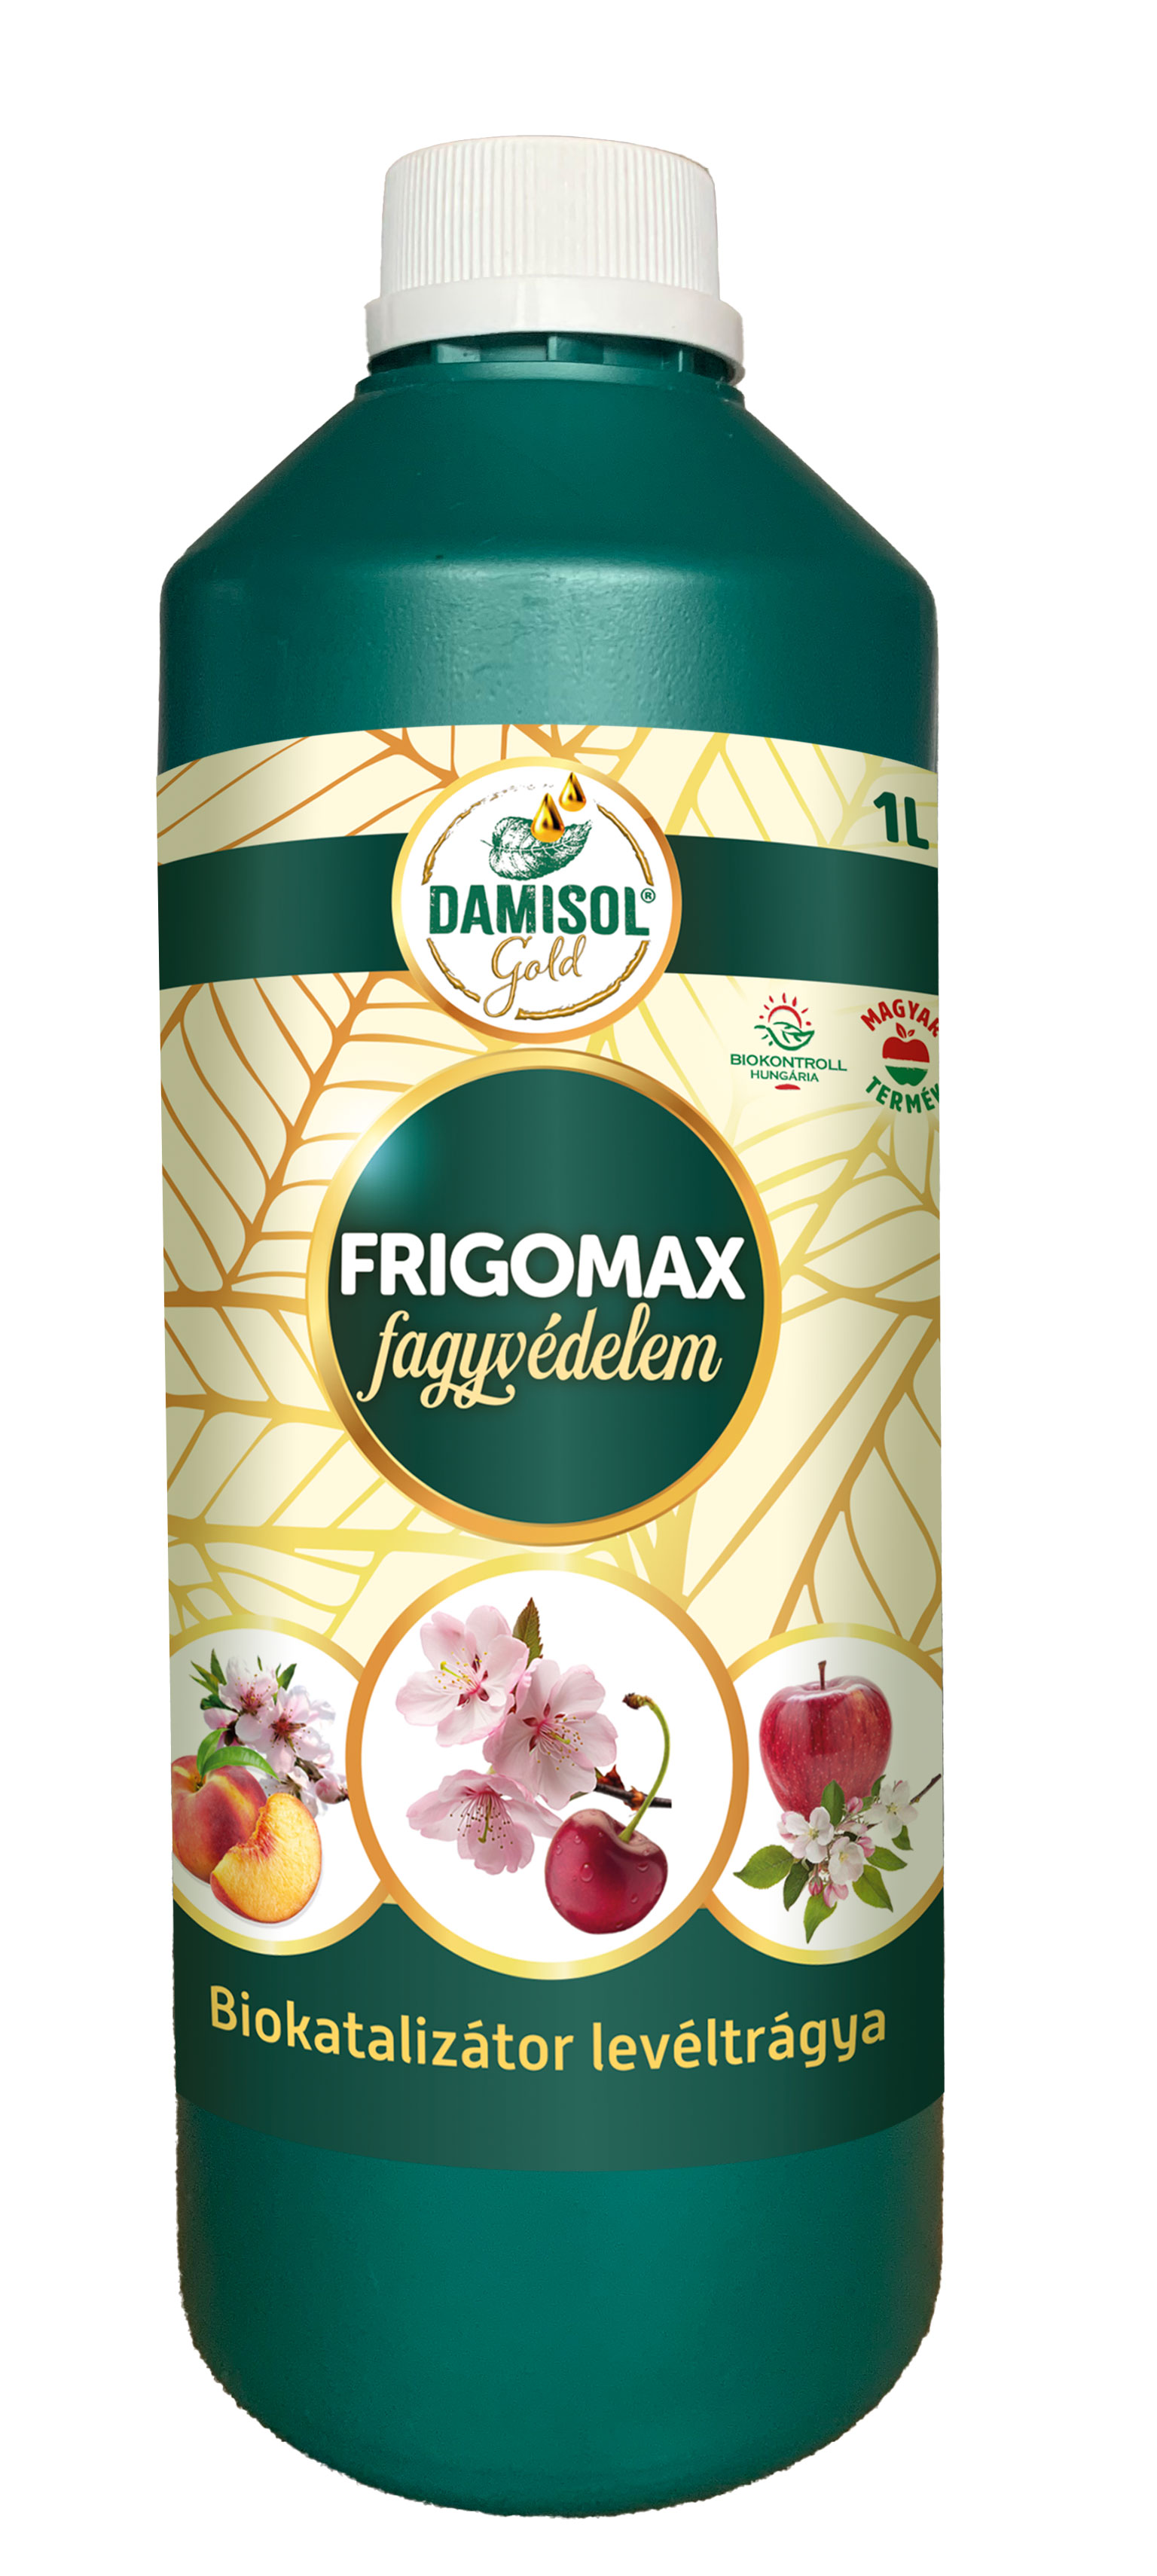 Damisol Gold Frigomax de protecție împotriva înghețului 1 l